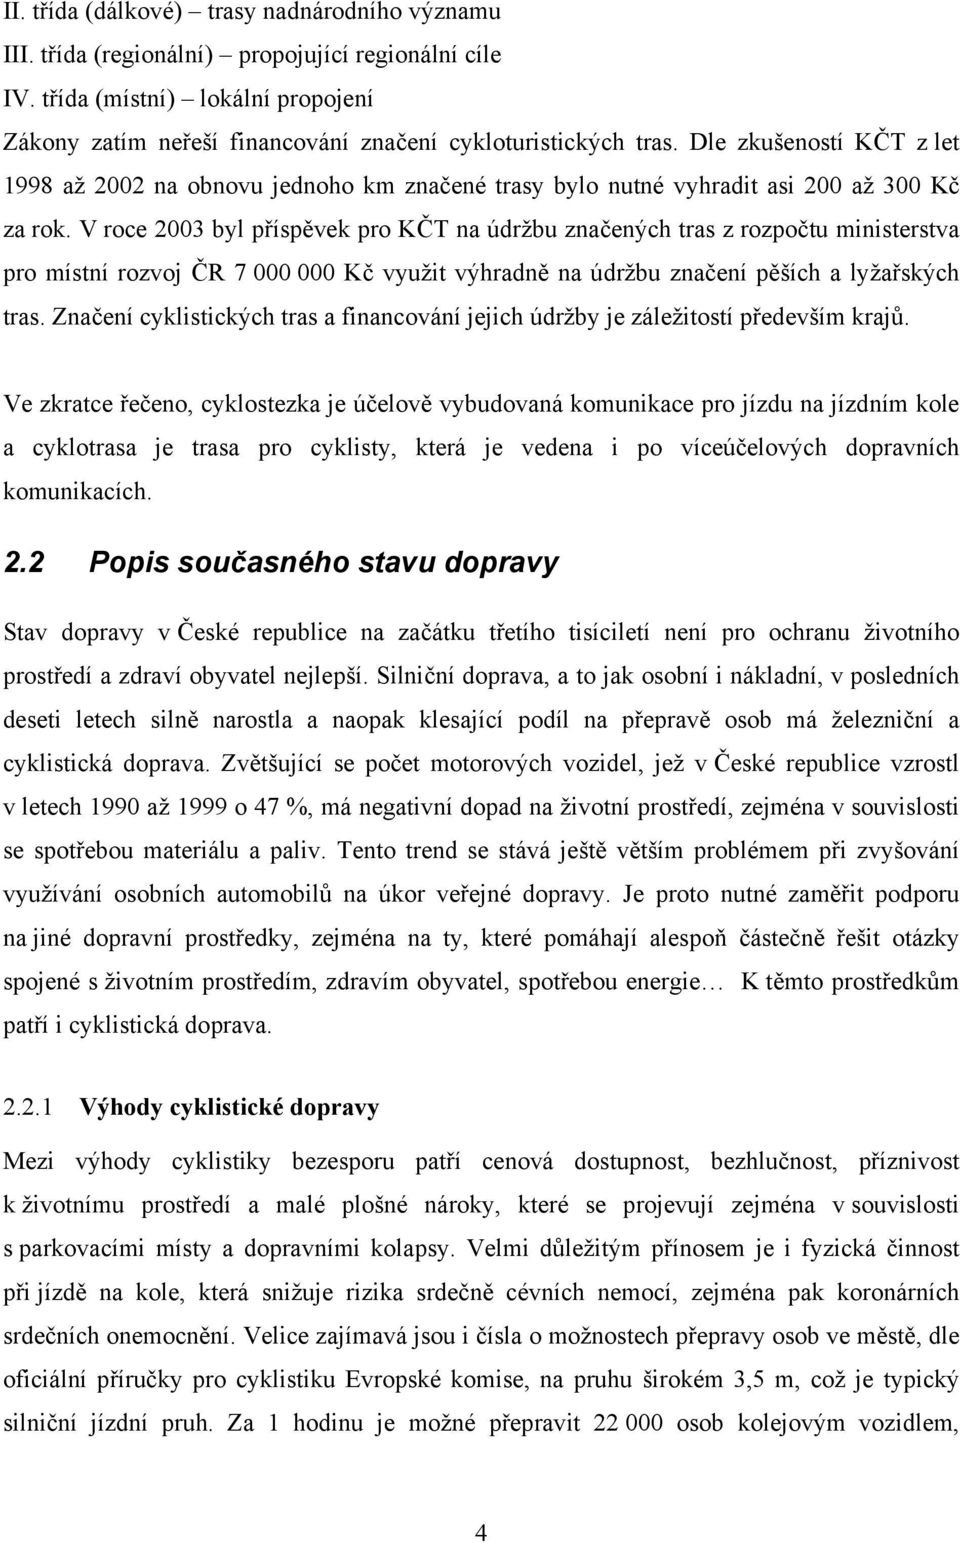 V roce 2003 byl příspěvek pro KČT na údržbu značených tras z rozpočtu ministerstva pro místní rozvoj ČR 7 000 000 Kč využit výhradně na údržbu značení pěších a lyžařských tras.